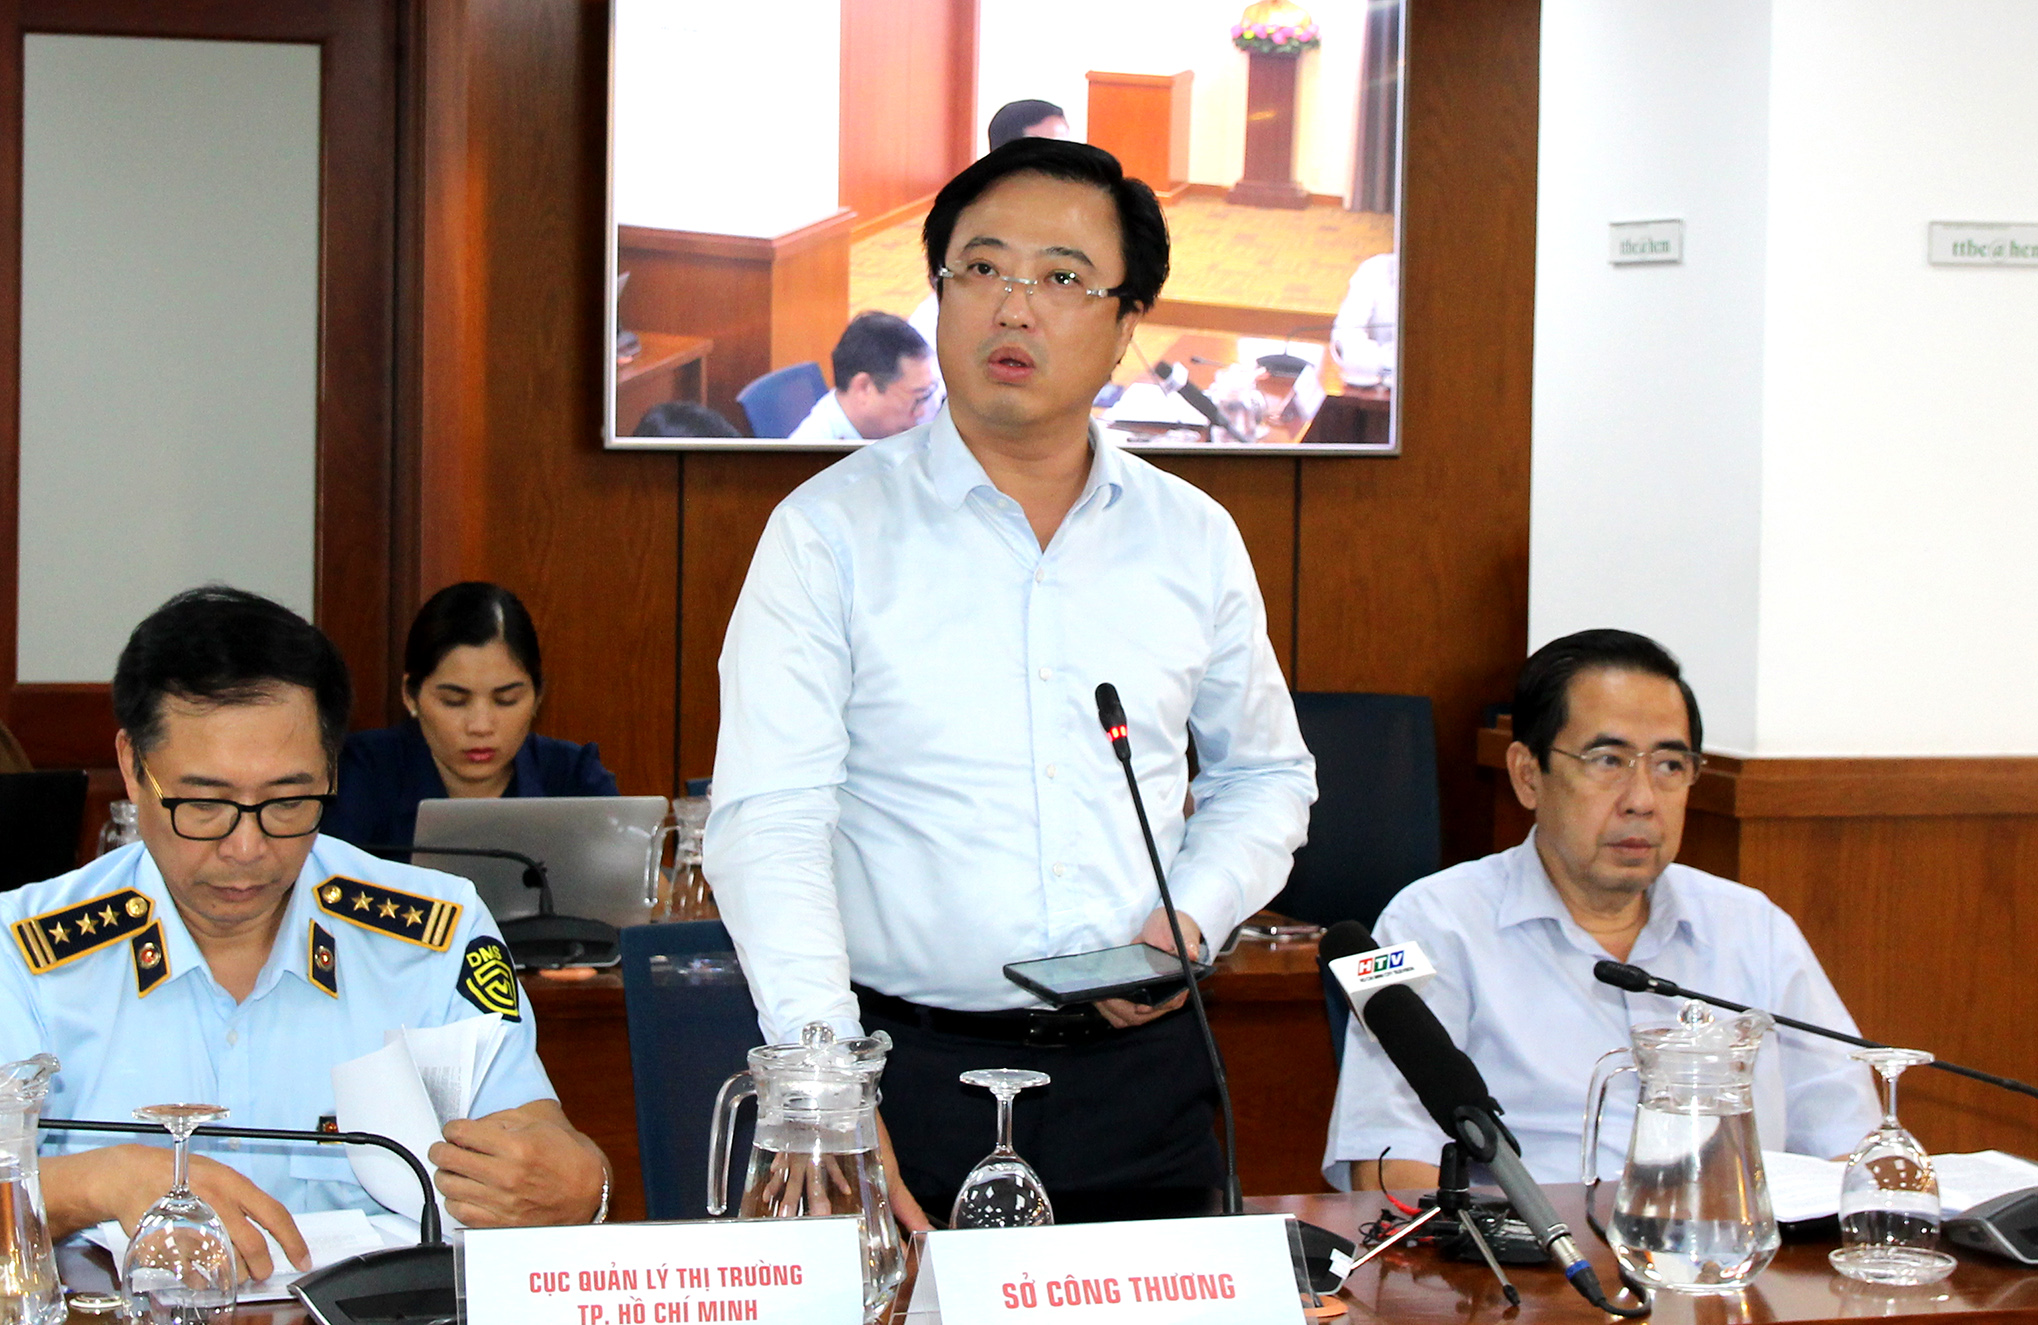 Đồng chí Lê Huỳnh Minh Tú - Phó giám đốc Sở Công thương TP. Hồ Chí Minh phát biểu tại buổi họp báo (Ảnh: HH)